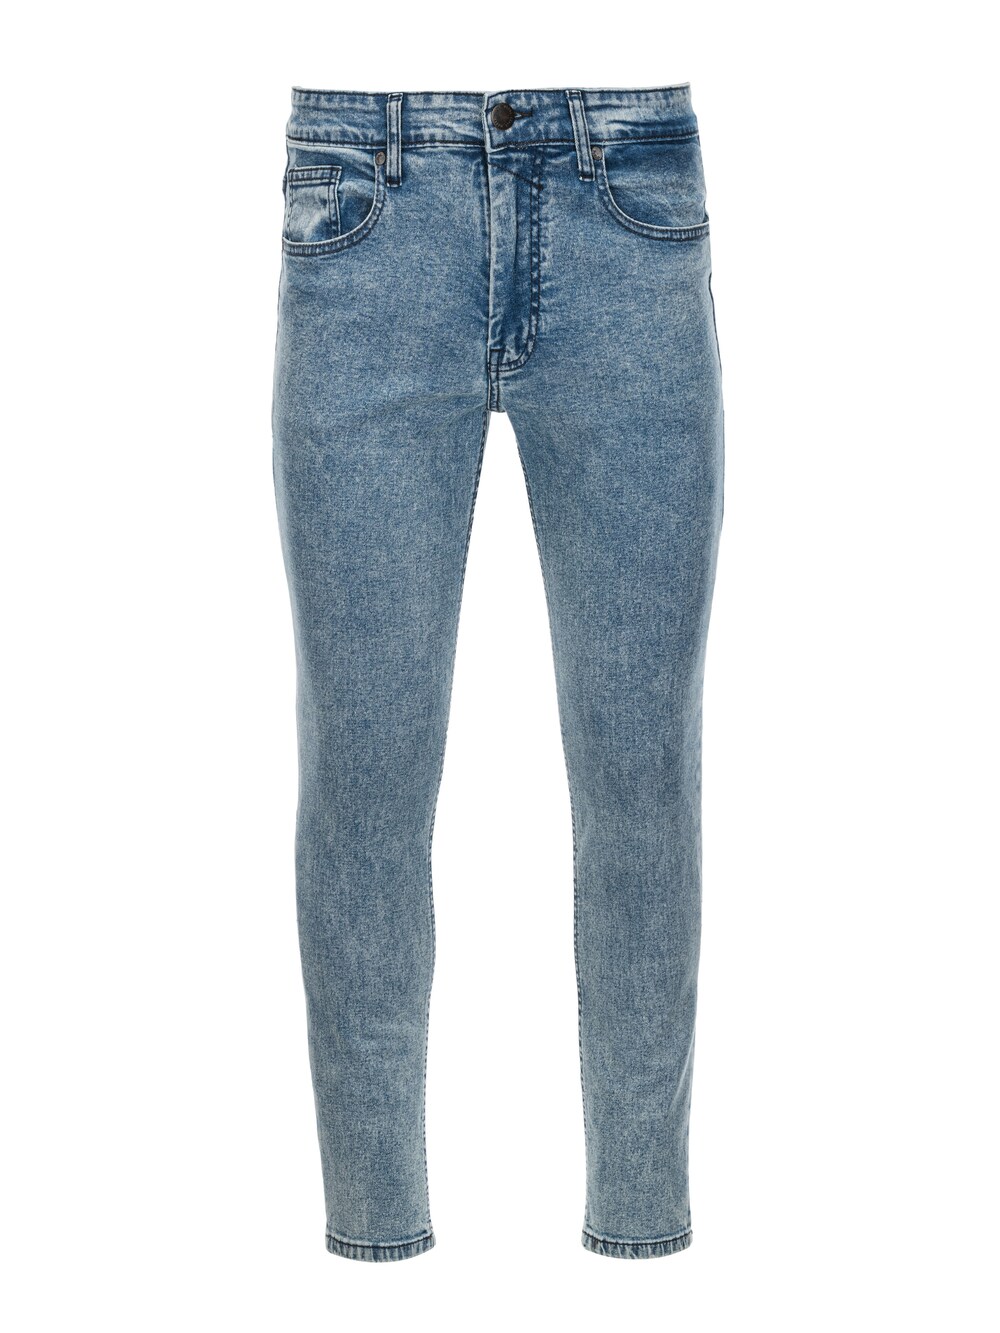 Узкие джинсы Ombre P1062, светло-синий